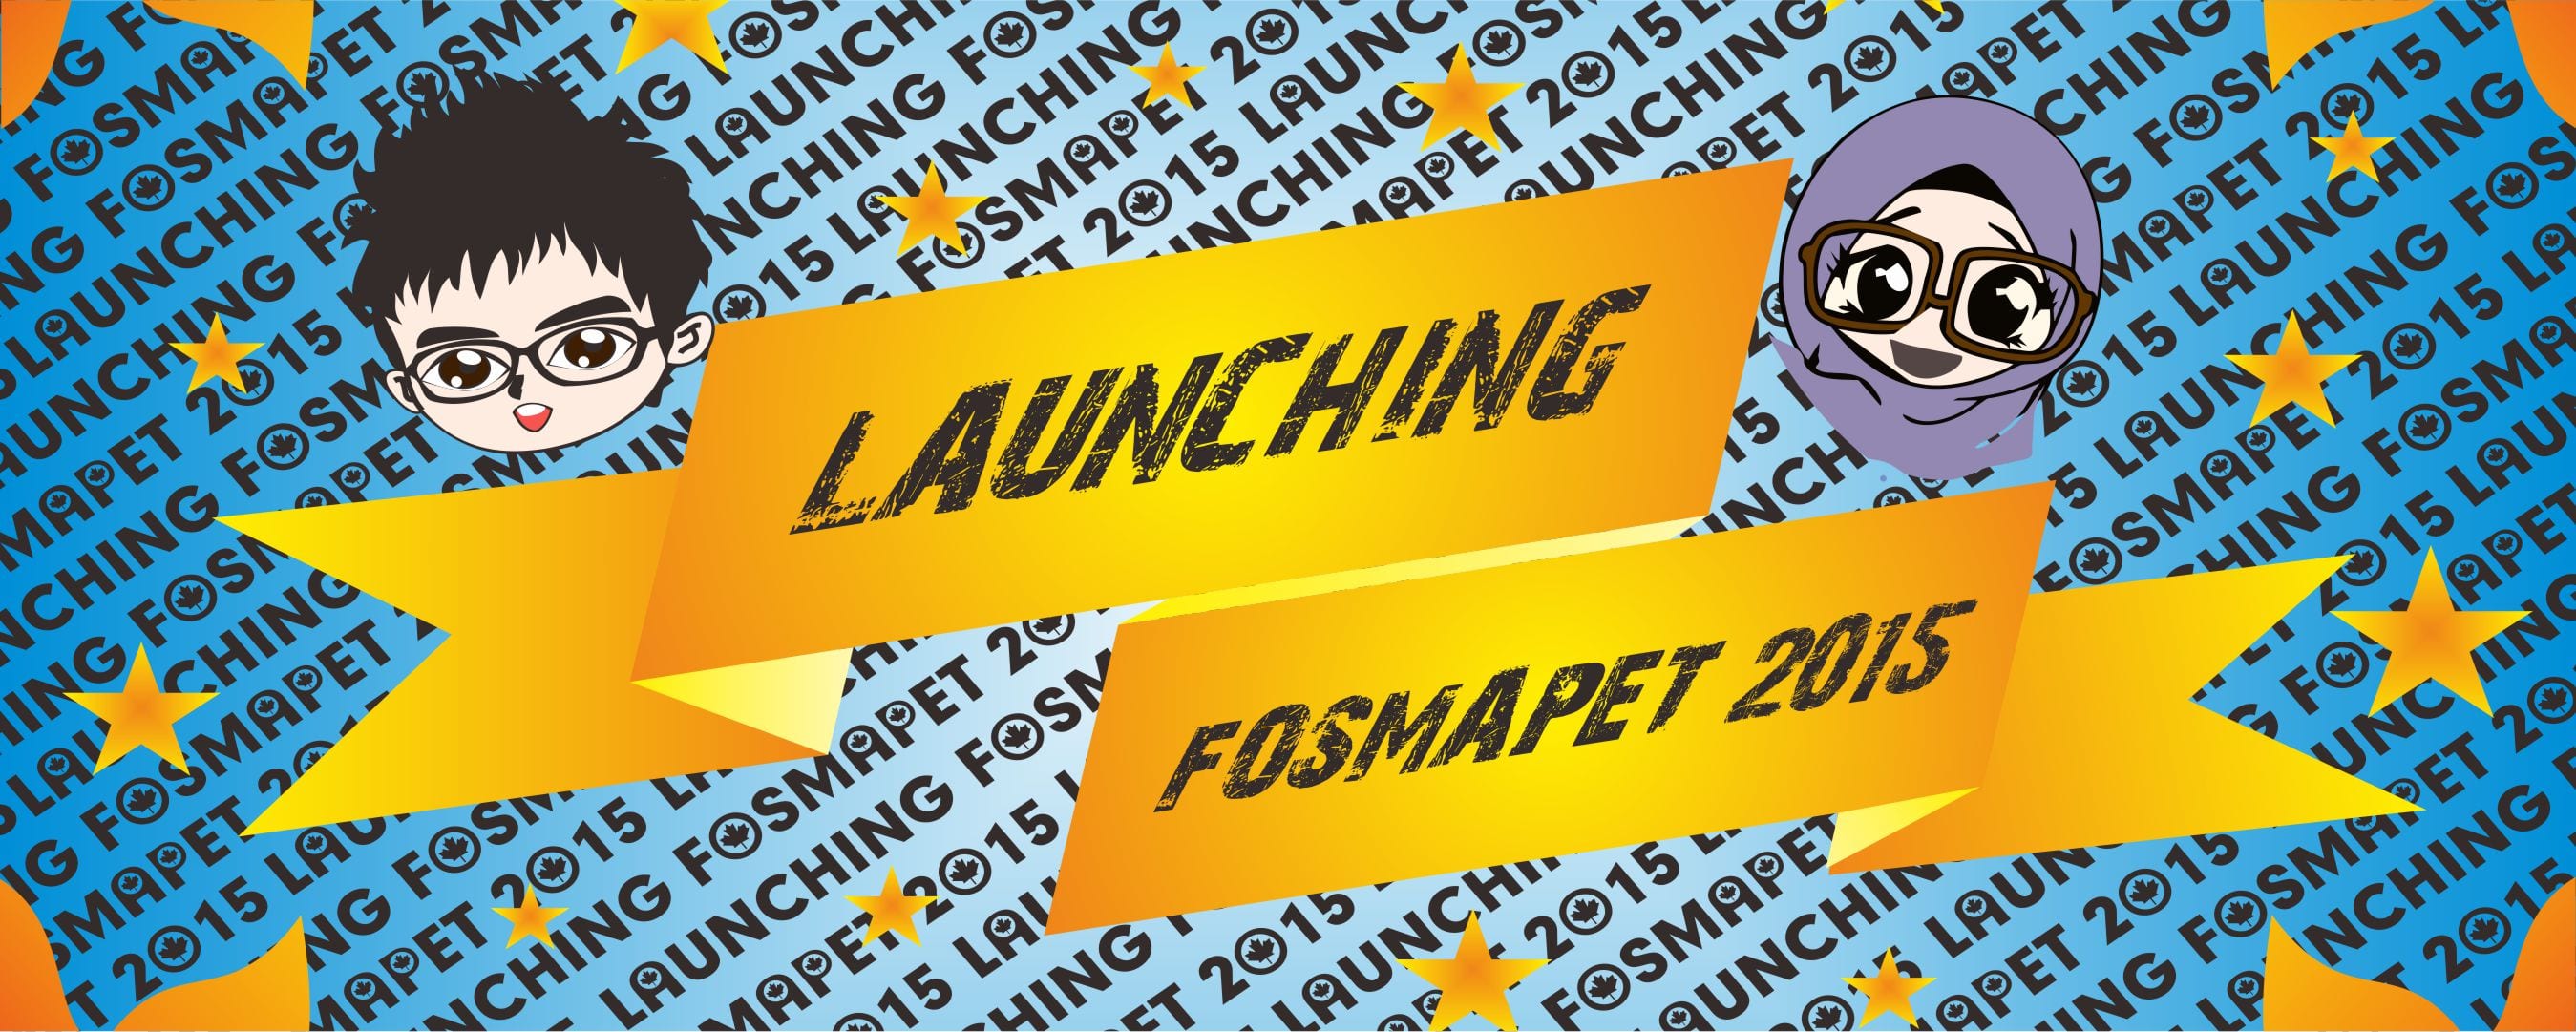 Launching Fosmapet 2015